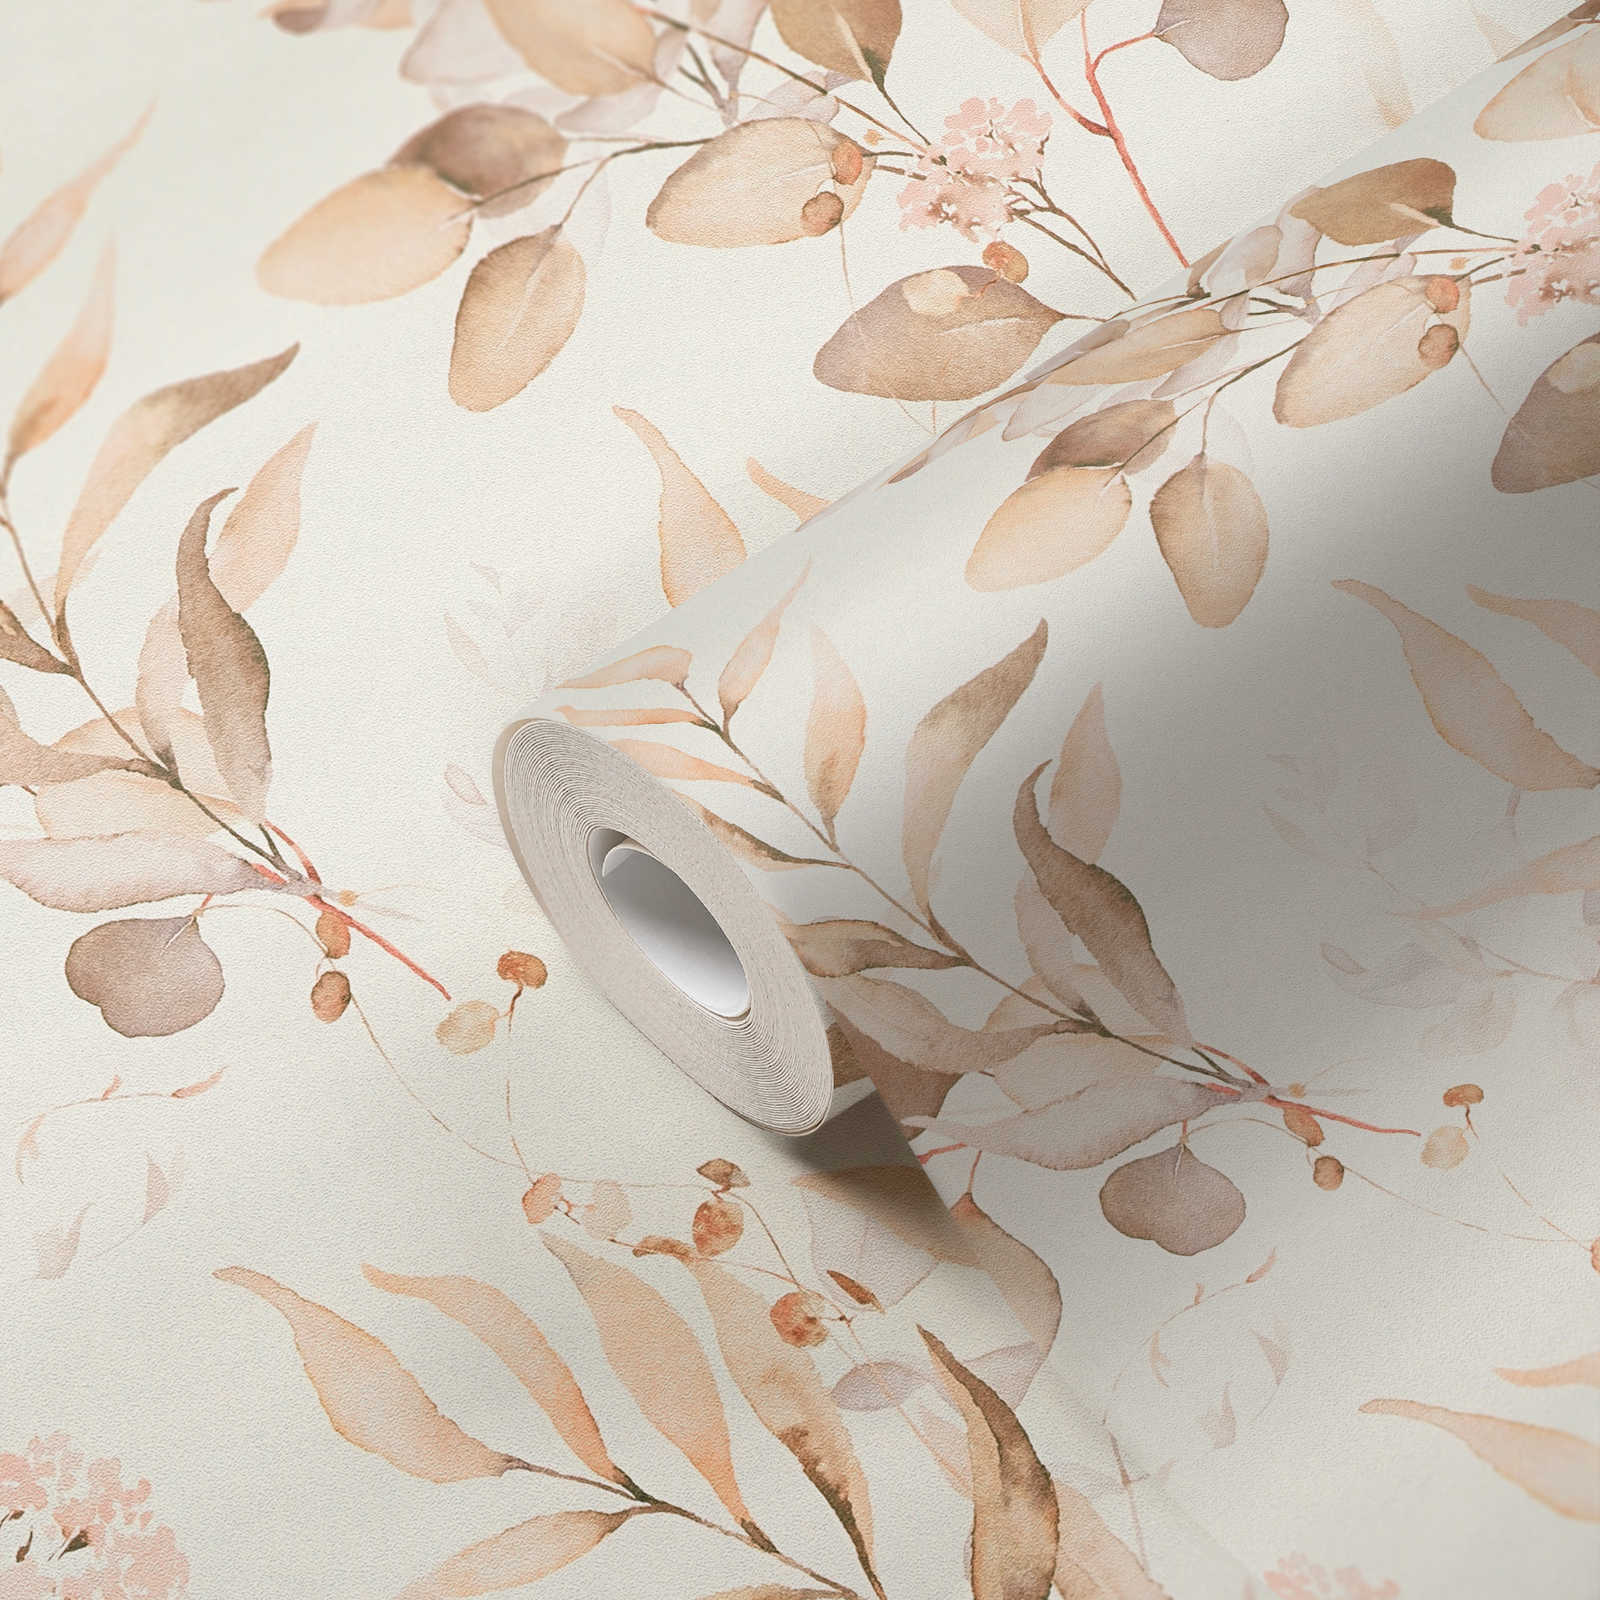             Papier peint intissé avec motif de feuilles aquarelles dans des tons chauds - crème, beige
        